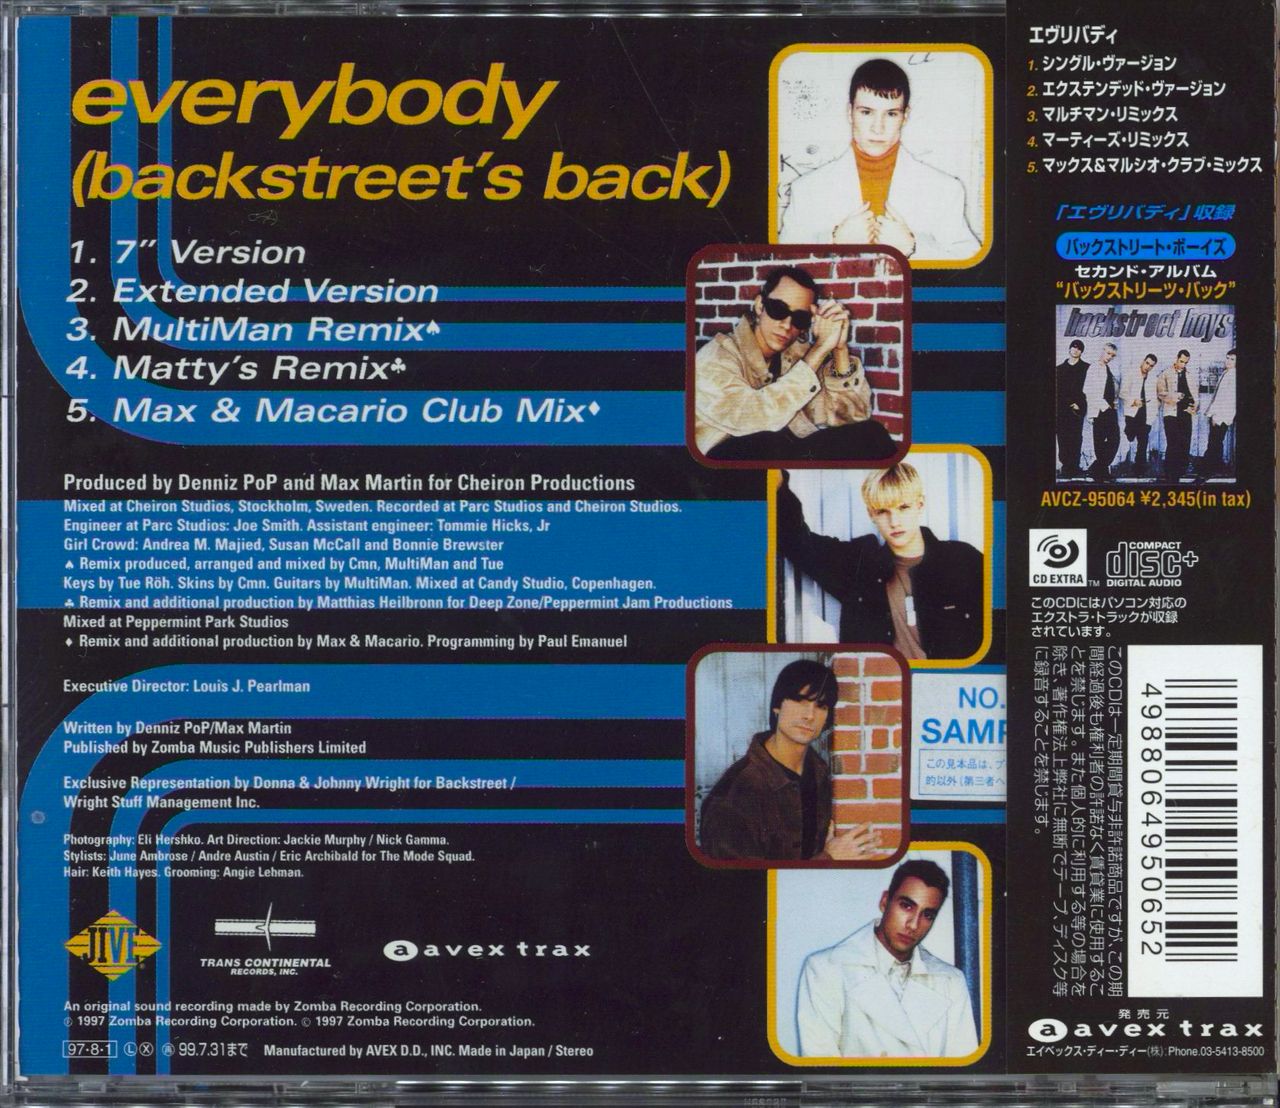 ☆非売品☆Backstreet Boys Poster Japan-